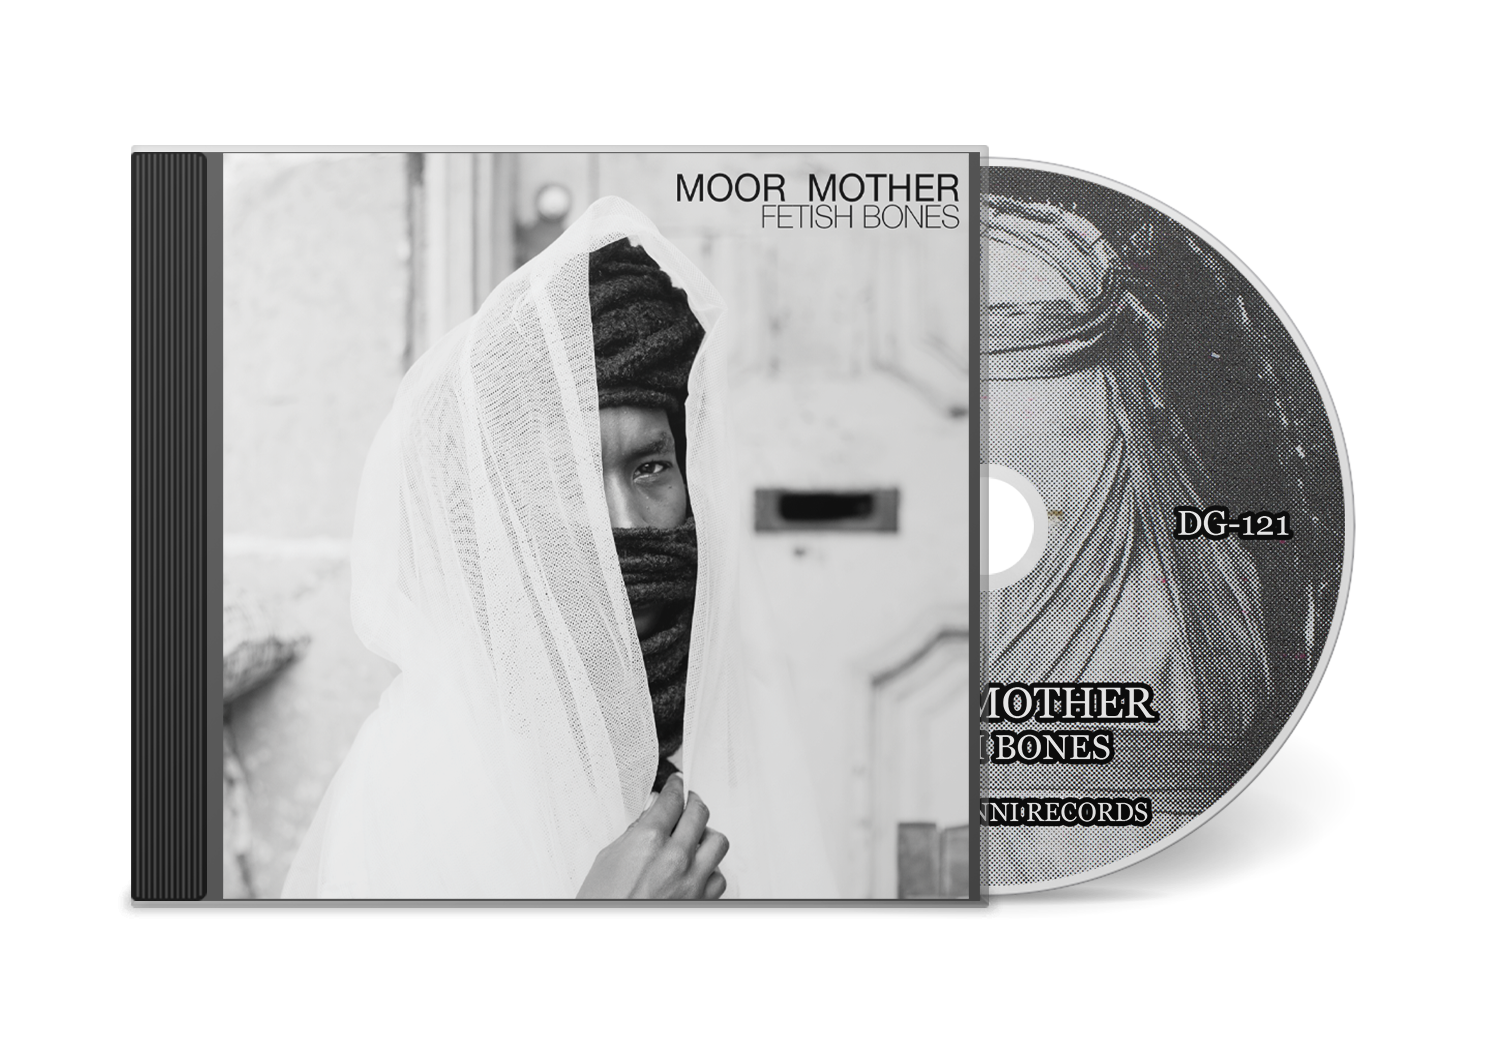 Moor Mother "Fetish Bones" CD